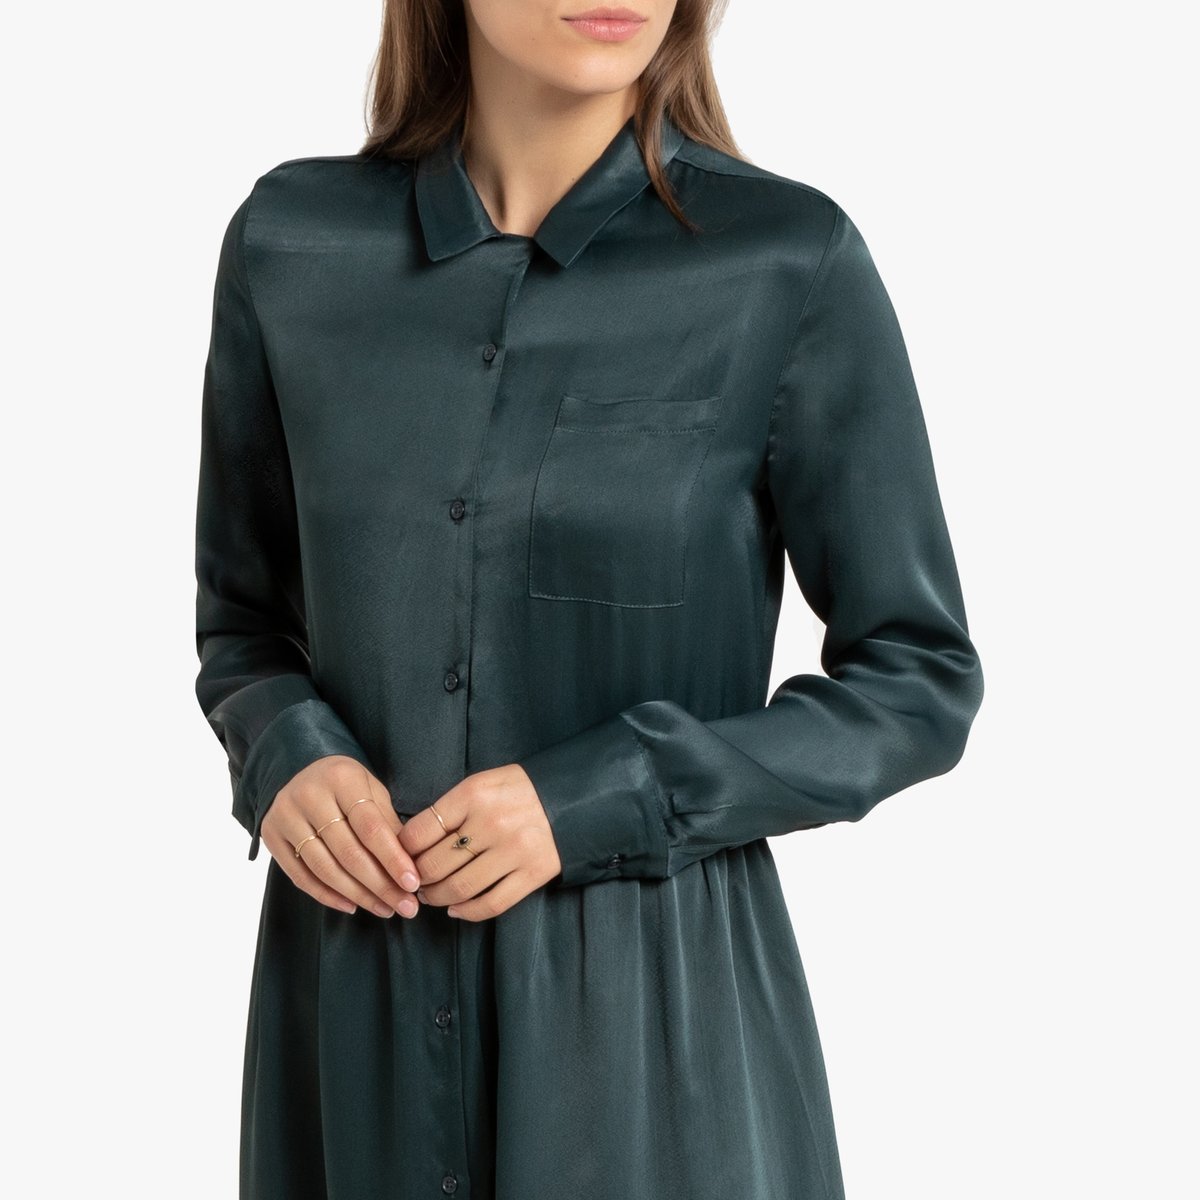 Платье-рубашка La Redoute Миди с длинными рукавами 40 (FR) - 46 (RUS) зеленый, размер 40 (FR) - 46 (RUS) Миди с длинными рукавами 40 (FR) - 46 (RUS) зеленый - фото 2